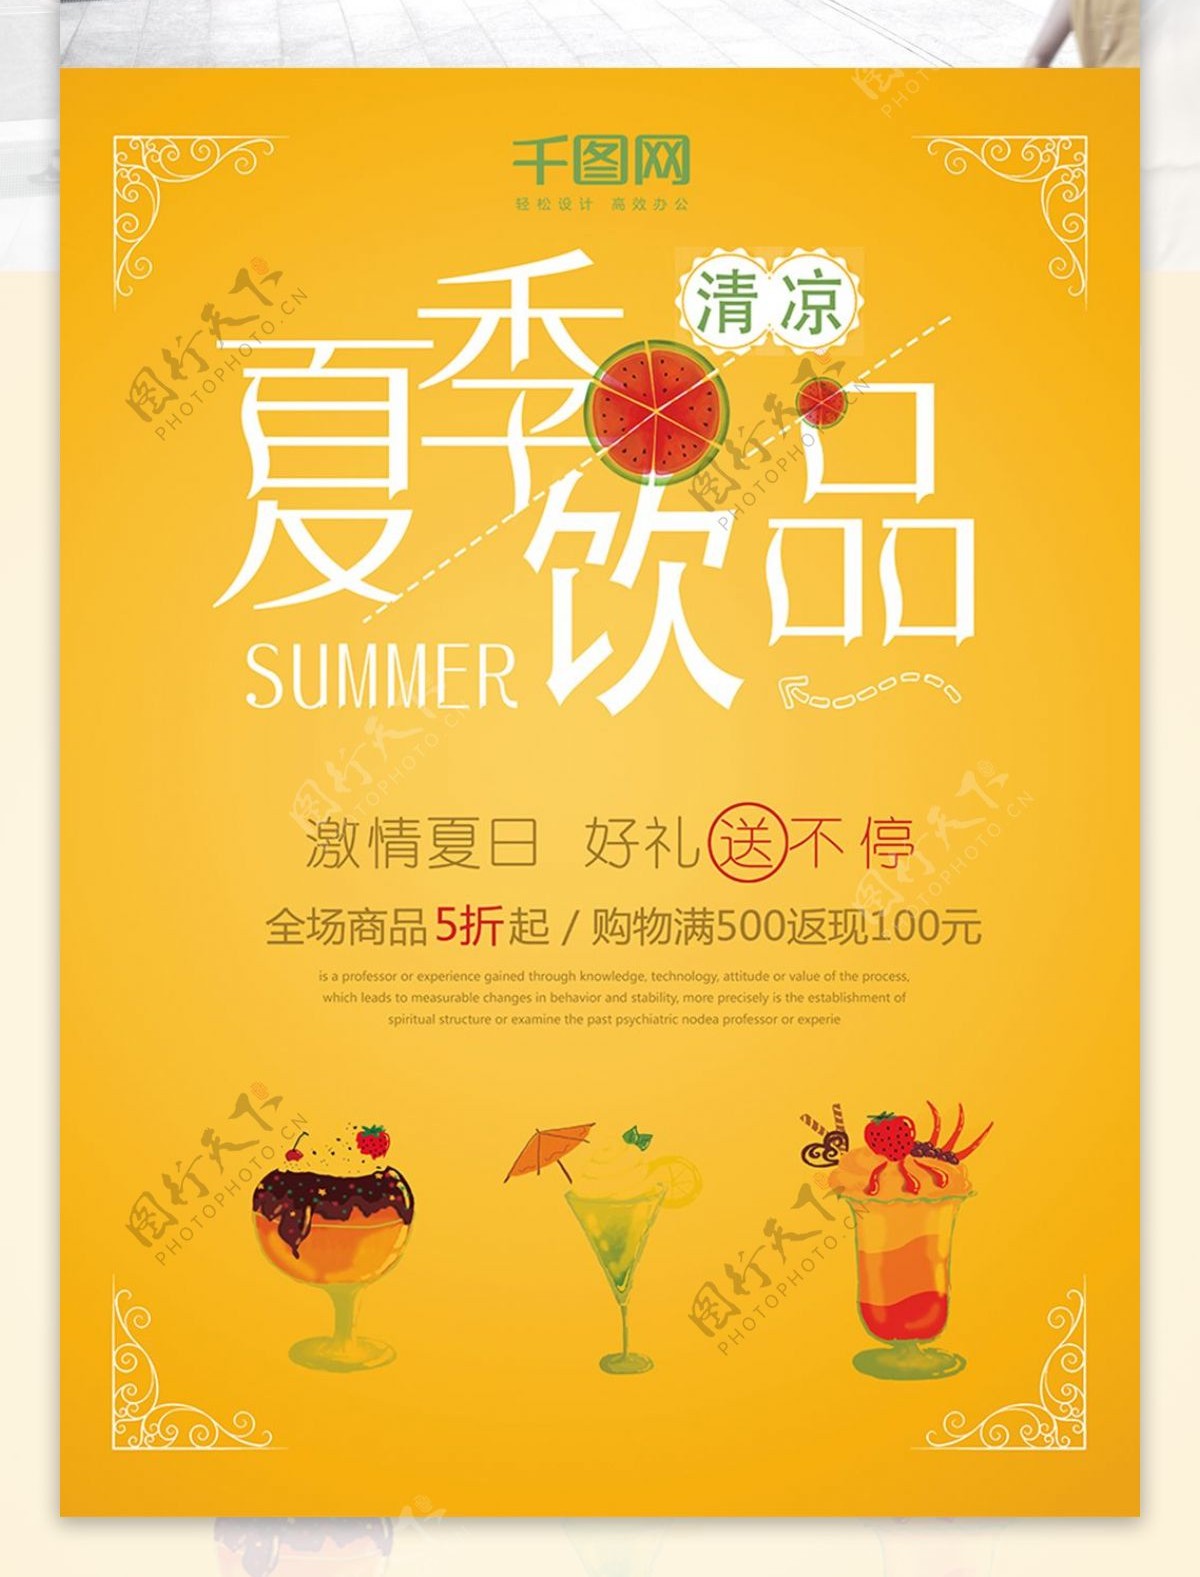 夏日饮品促销海报